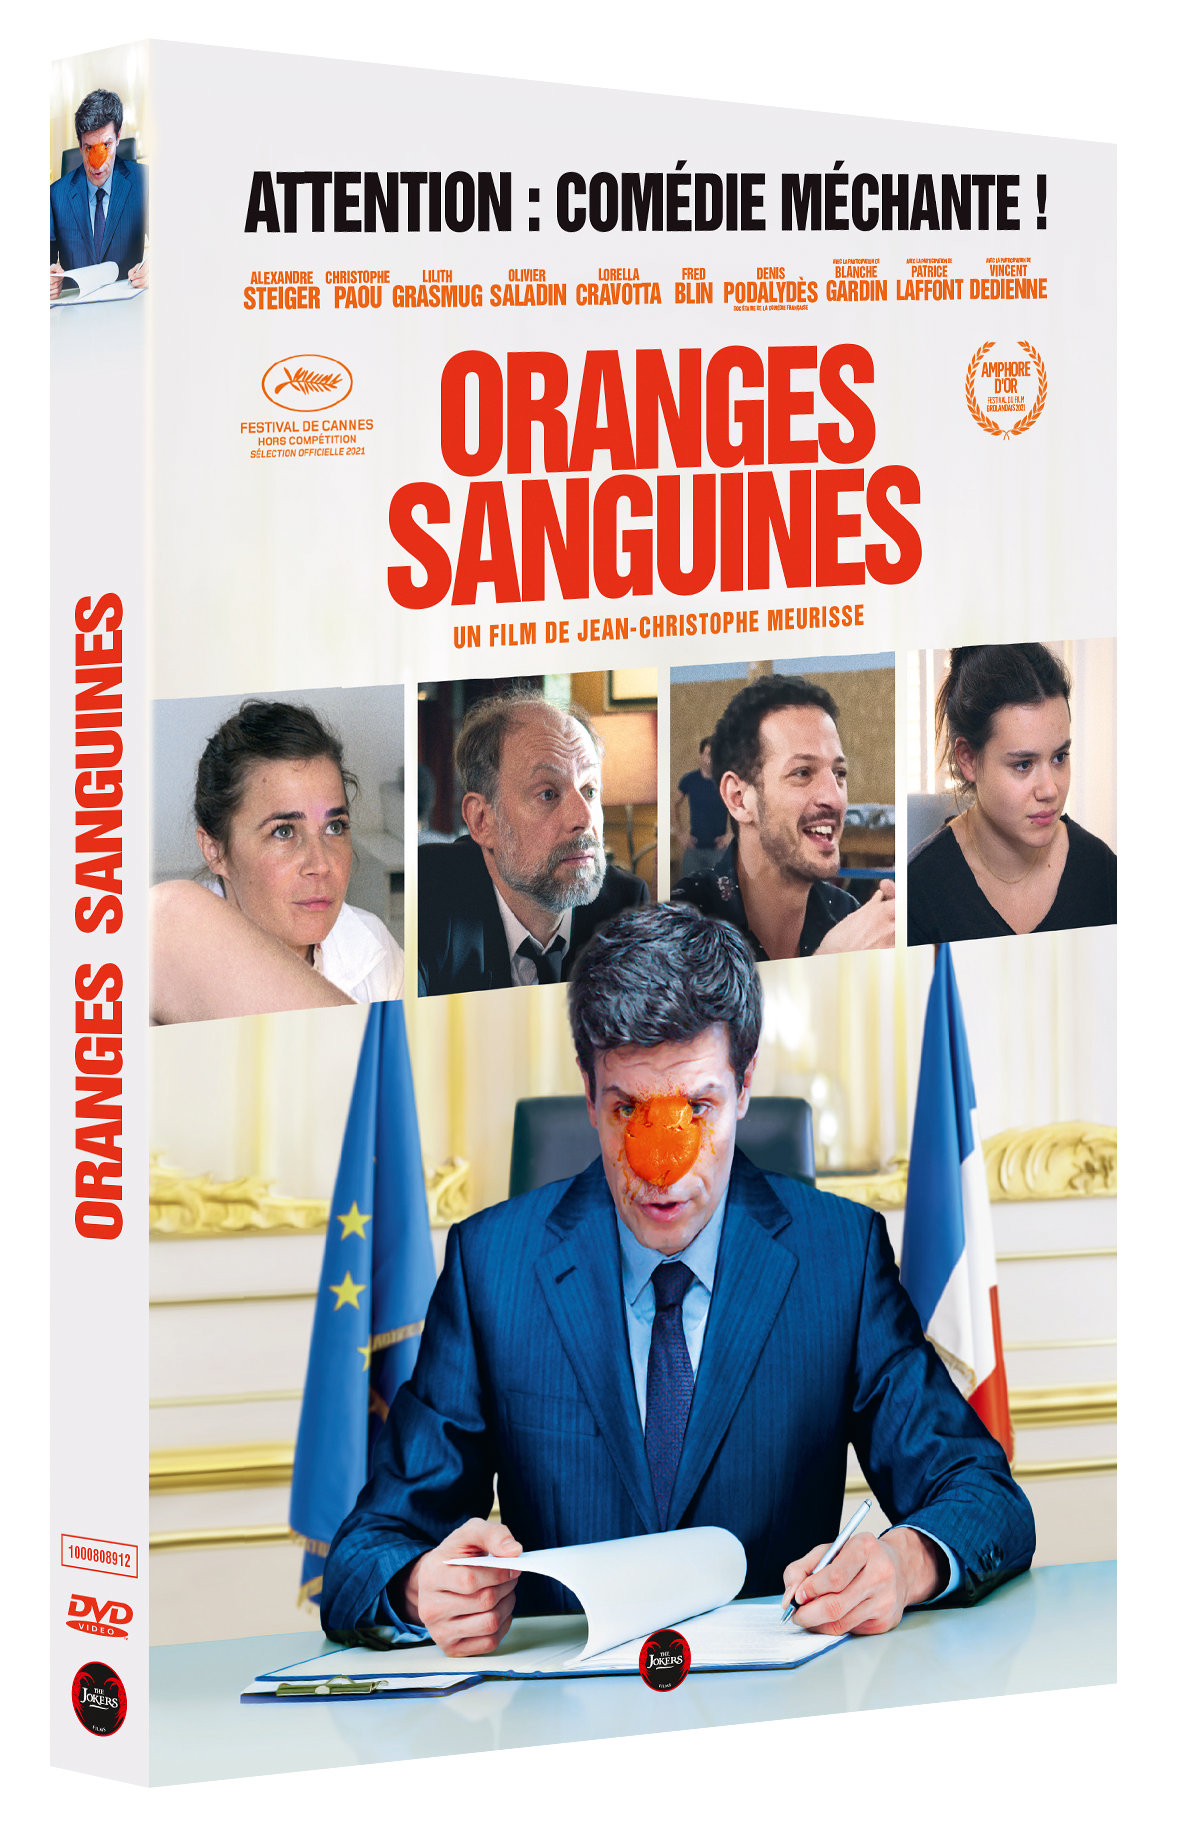 DVD "Oranges Sanguines"